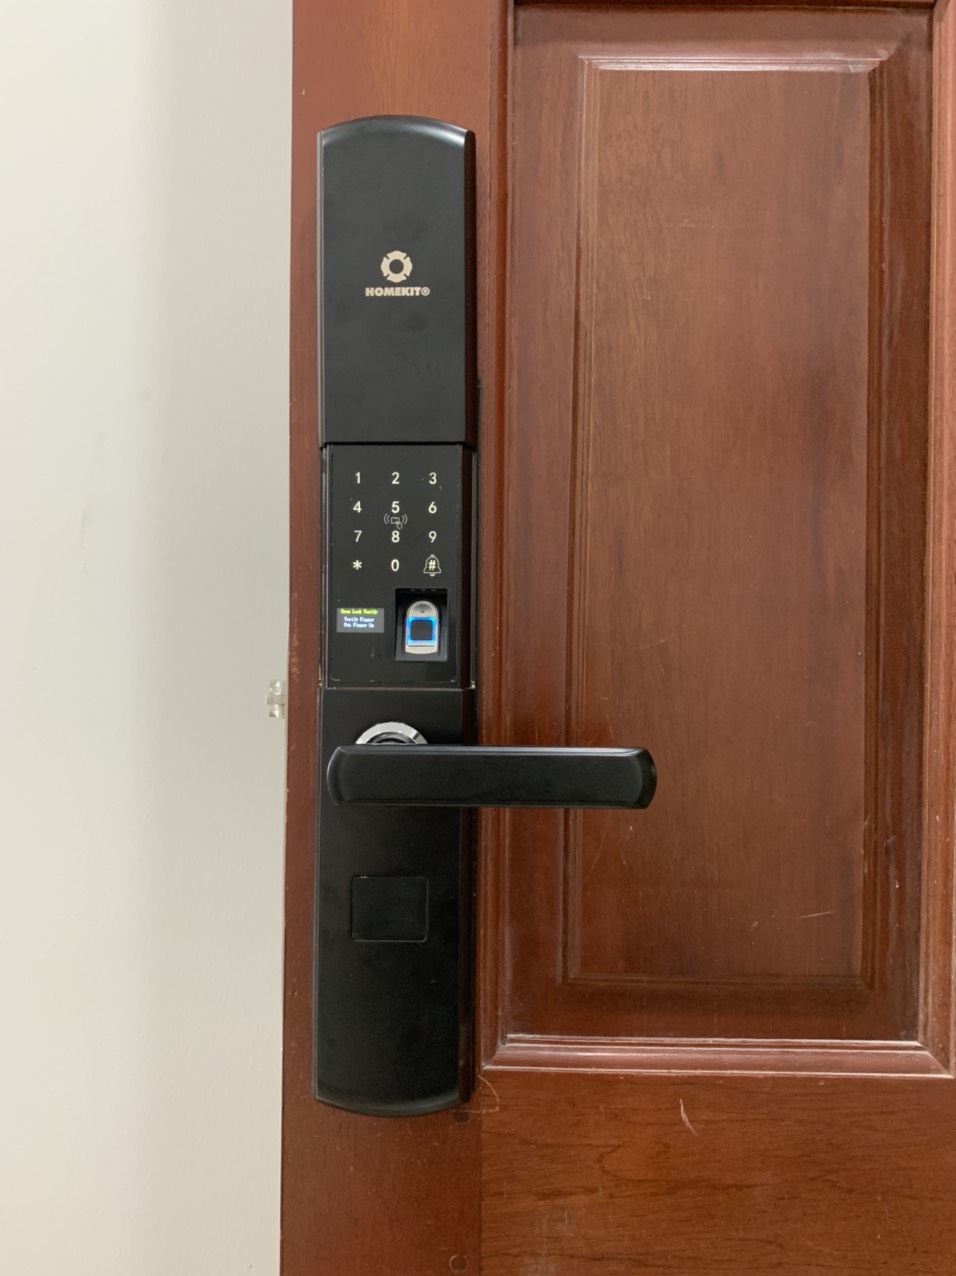 Khóa vân tay cửa gỗ: Với khóa vân tay cửa gỗ, bạn sẽ tạo nên cảm giác yên tâm và an toàn cho ngôi nhà của mình. Hãy xem hình ảnh để khám phá phong cách thiết kế tinh tế và tính năng hiệu quả của khóa cửa vân tay.